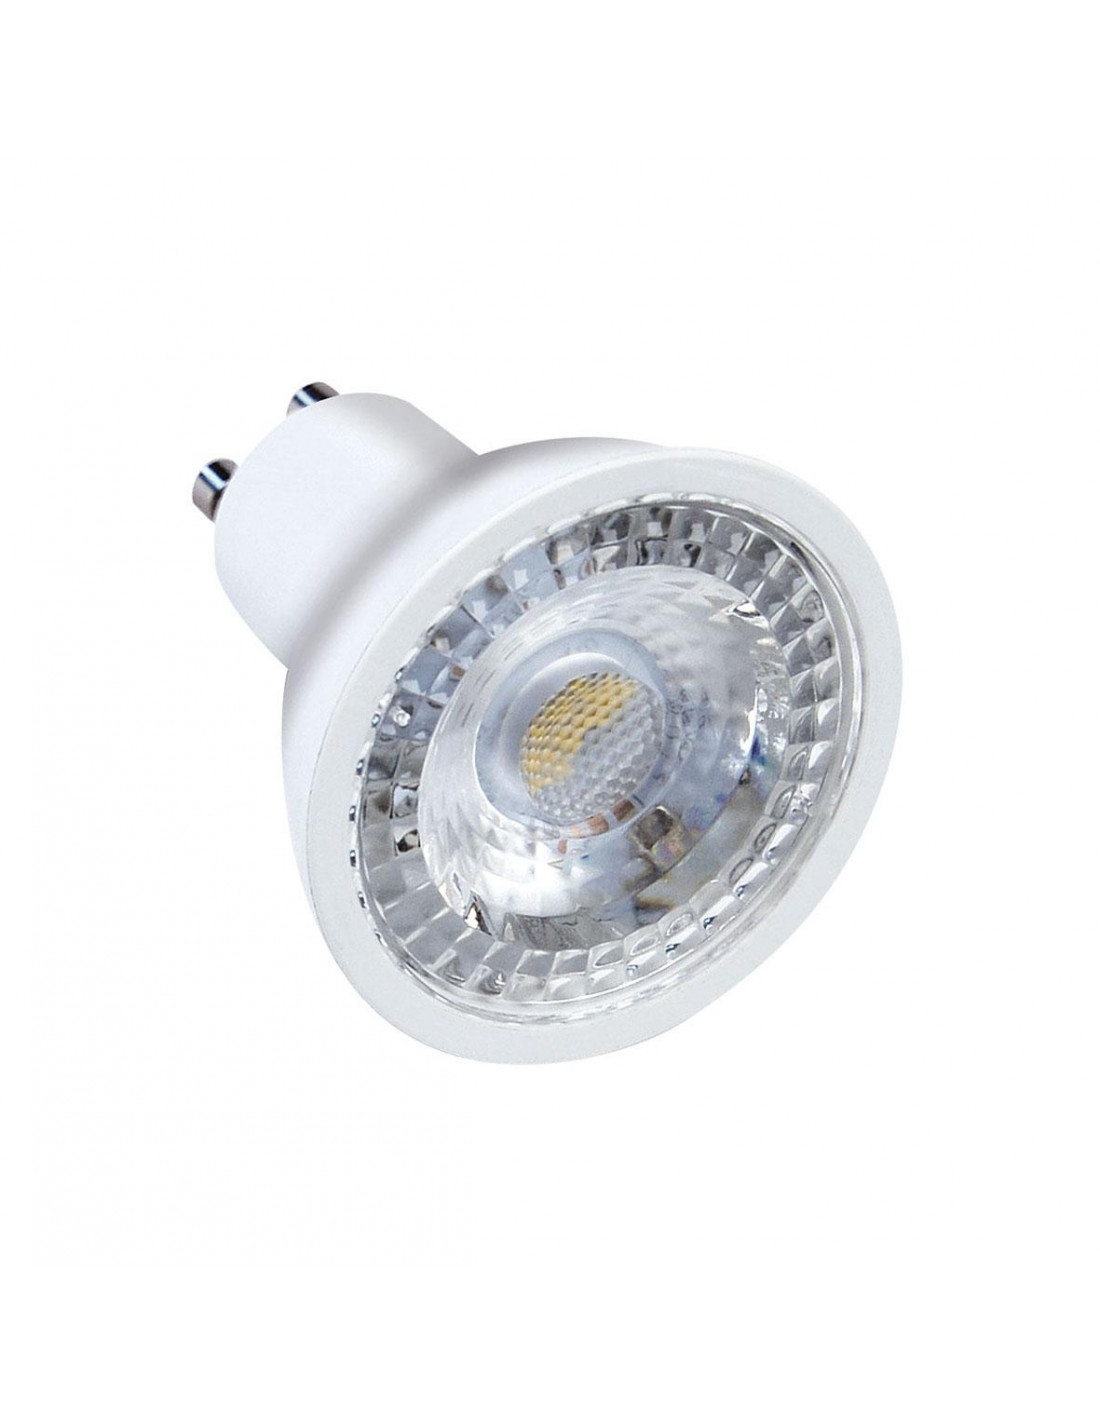 2982 - Ampoule LED GU10 6W de la marque Aric